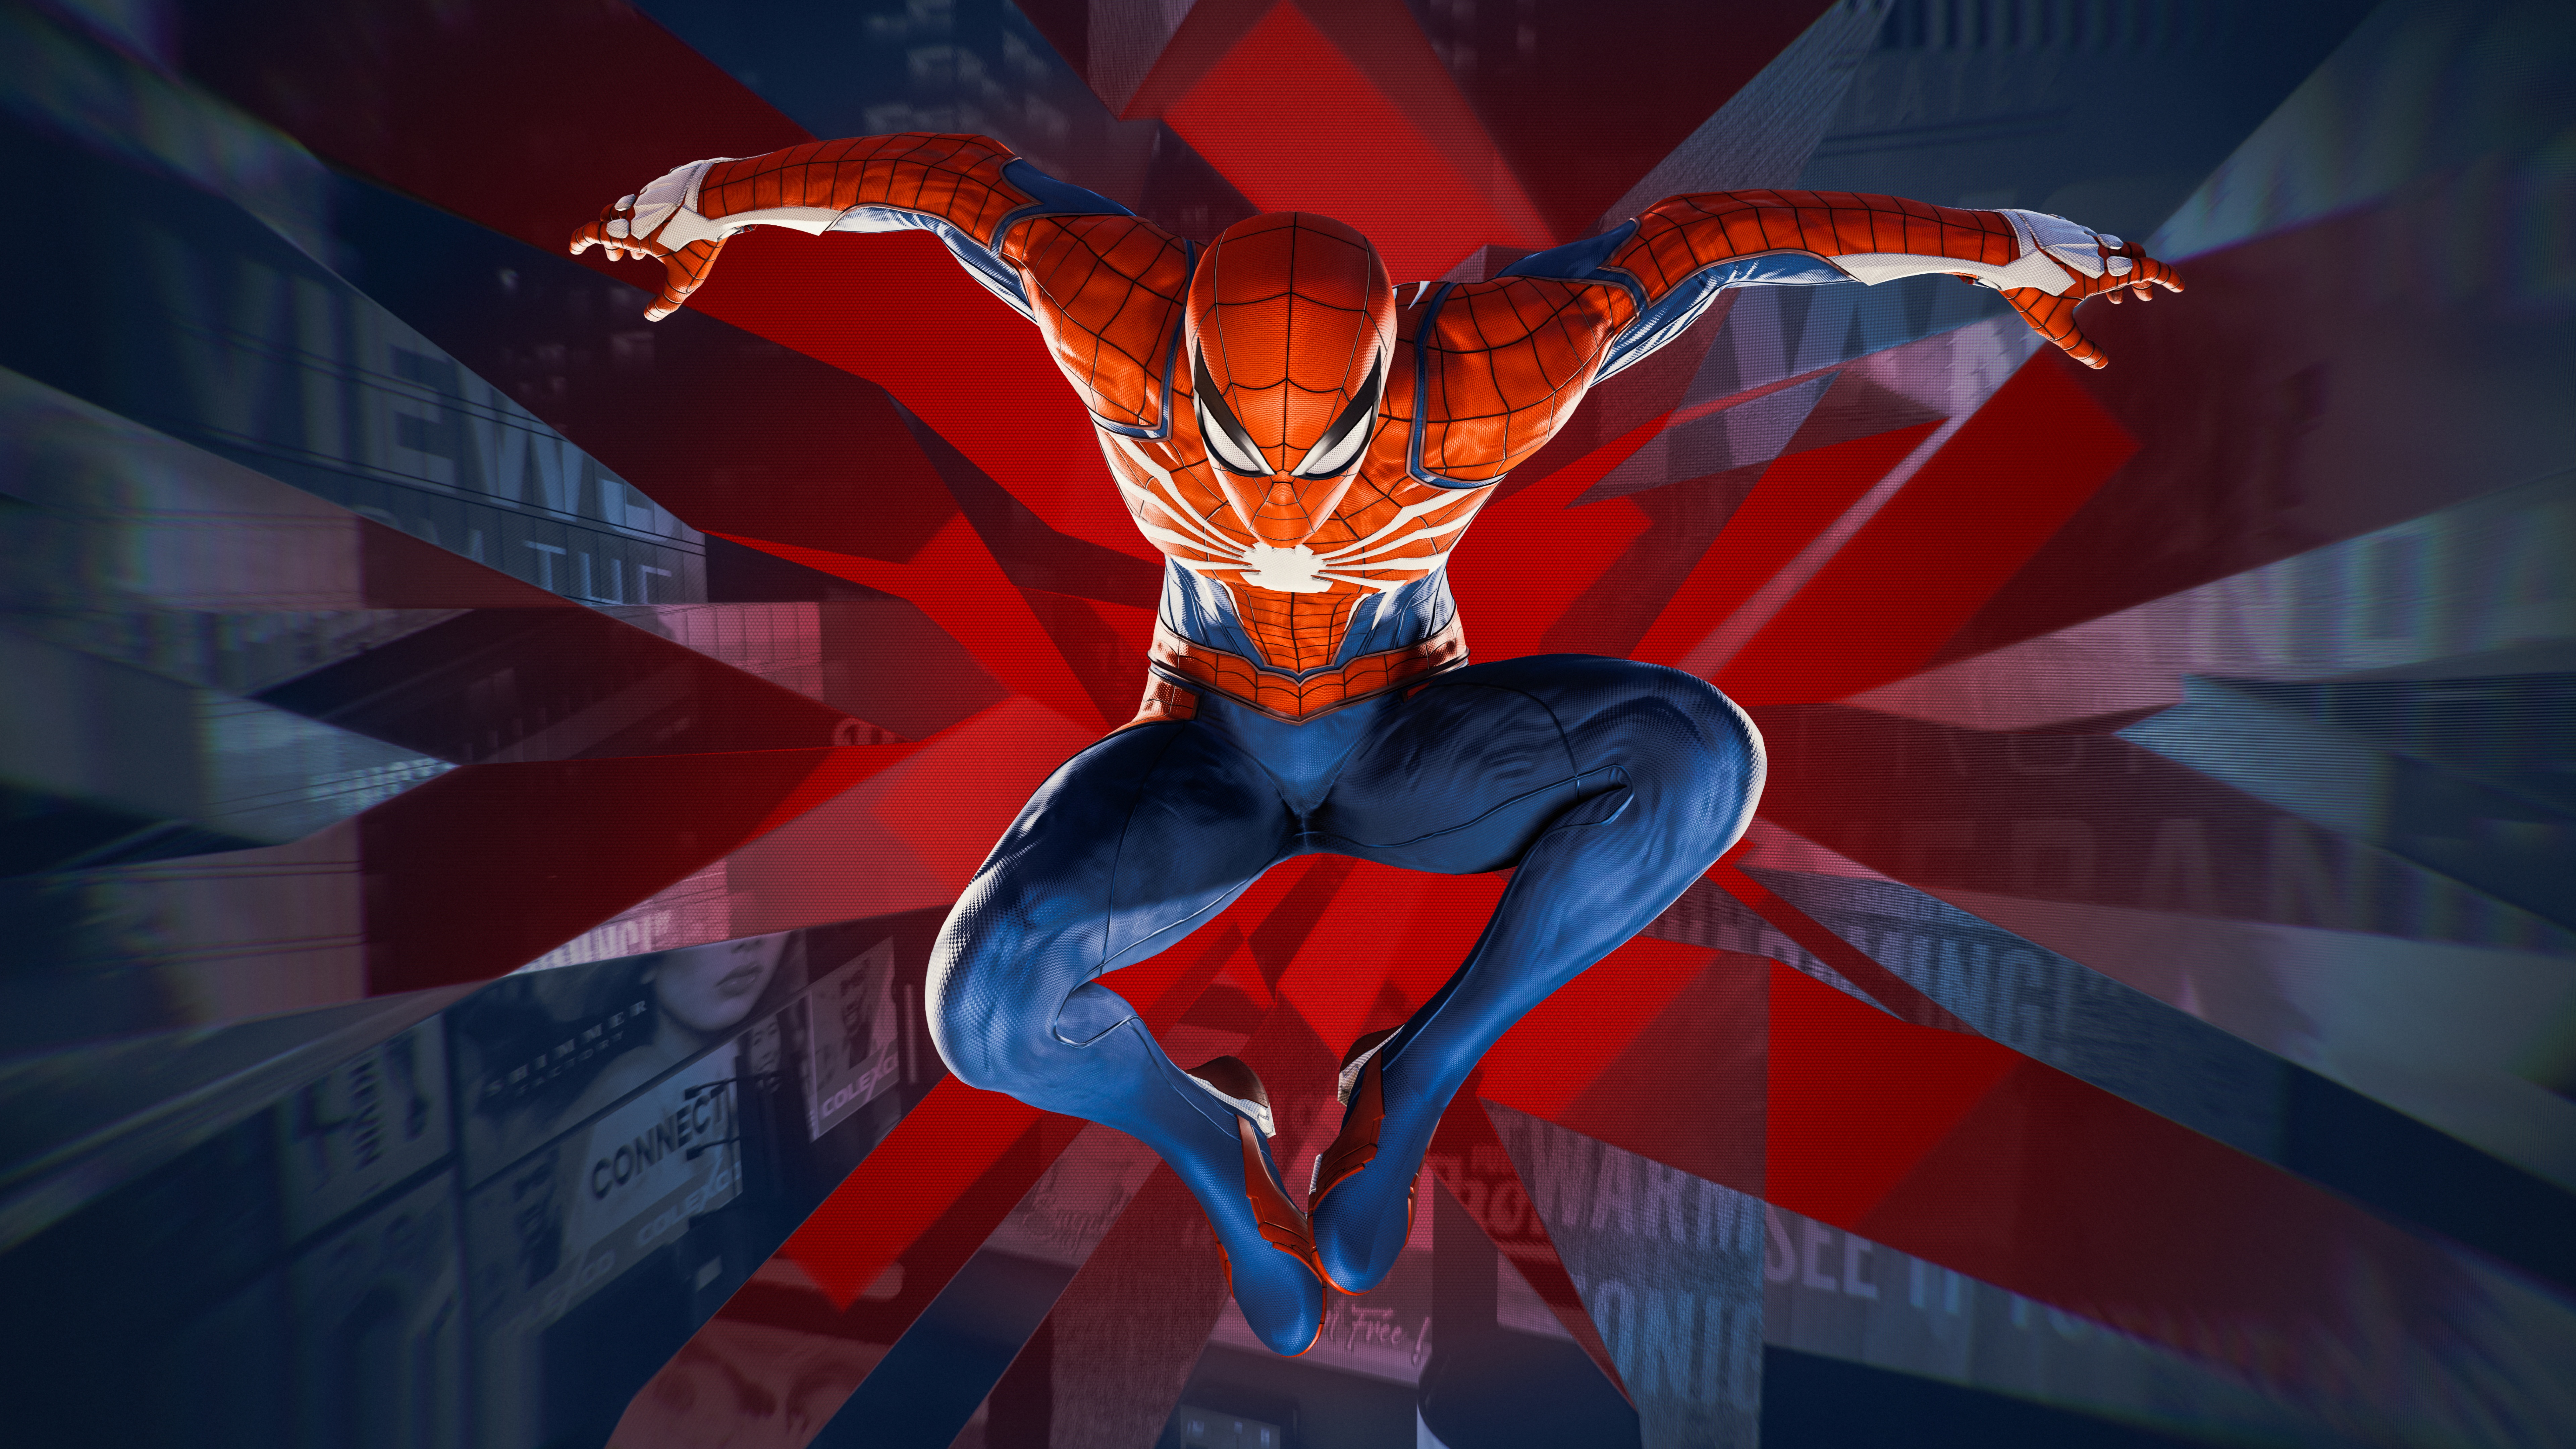 Tường nền Marvel\'s Spider-Man 4K - Trò chơi PC - PlayStation 4 - Trò chơi: Với tường nền Marvel\'s Spider-Man siêu đẹp tuyệt vời này, bạn sẽ hóa thân thành một siêu anh hùng chuyên săn lùng các tội phạm. Với độ phân giải 4K và thiết kế đơn giản nhưng tinh tế, tường nền này sẽ trở thành một tác phẩm nghệ thuật khiến bạn mãn nhãn. Chắc chắn rằng bạn sẽ không thể rời mắt khỏi tường nền này khi đã nhìn vào đó.